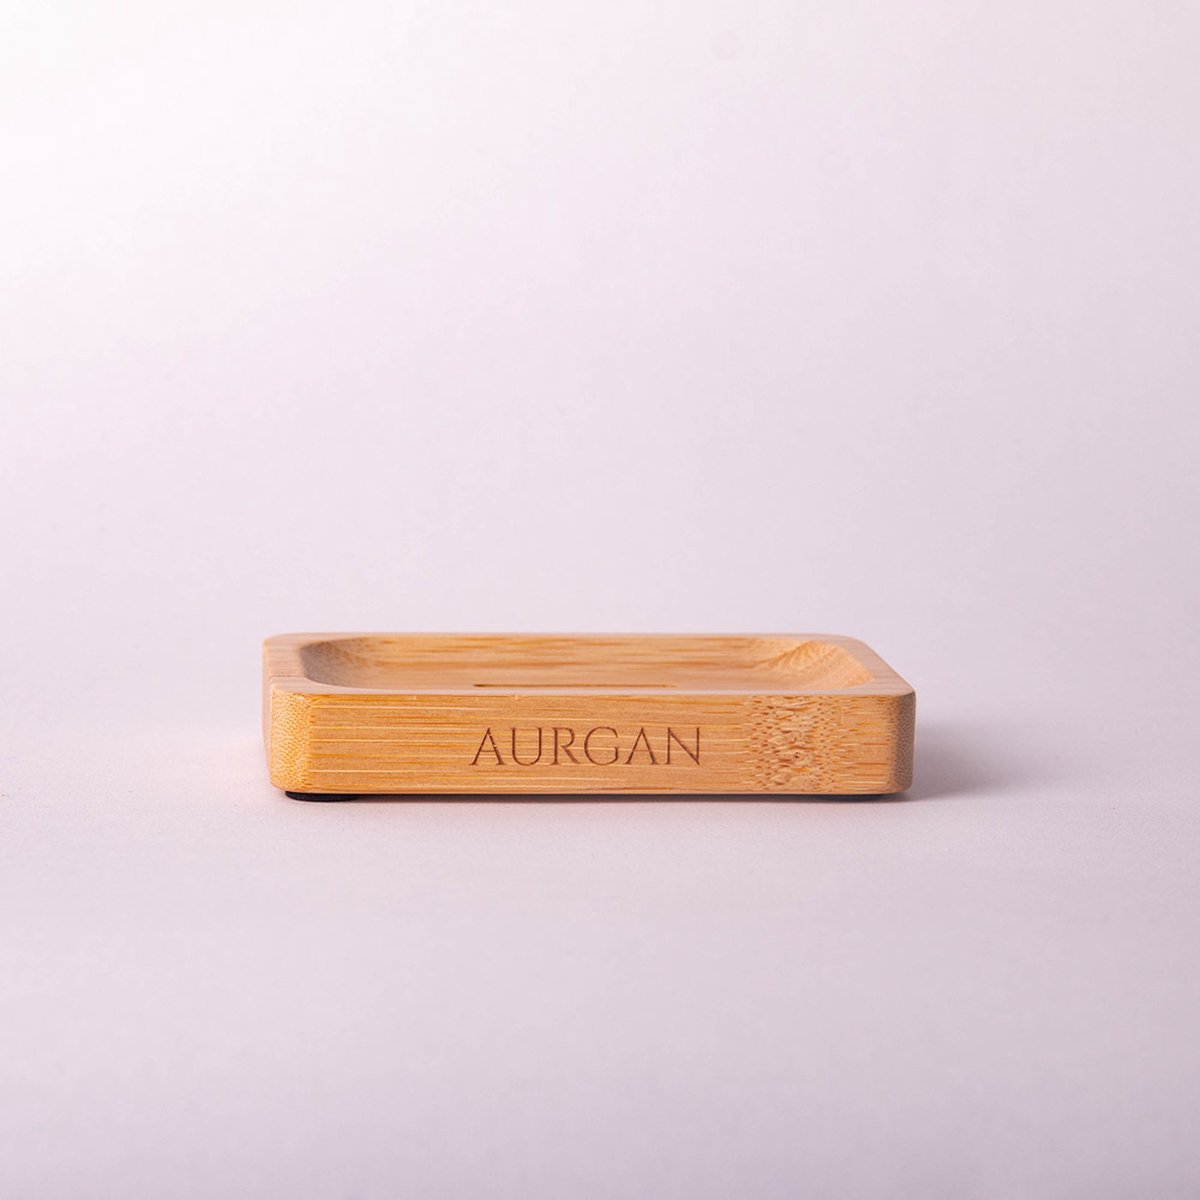 Aurgan zeephouder - Bamboe zeephouder - duurzaam hout